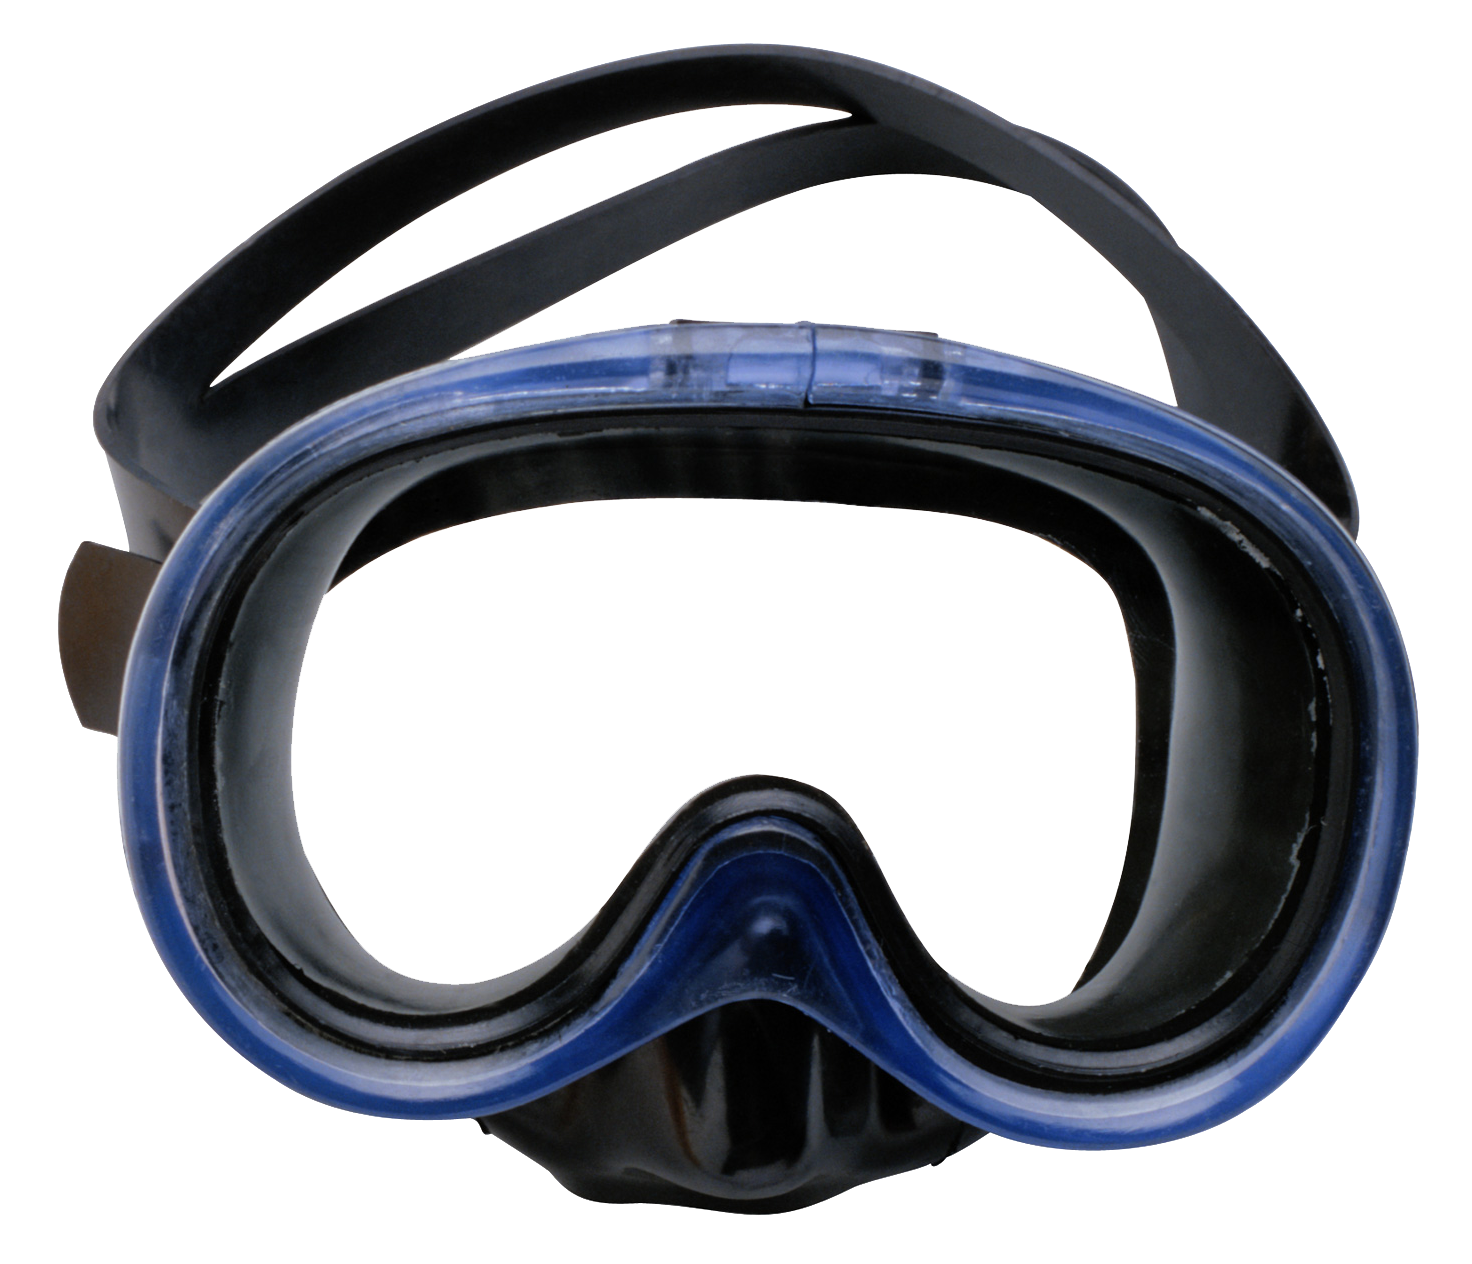 Маска плавательная. Подводная маска Scuba. Очки для плавания Diving Goggles. Маска для дайвинга. Водолазная маска Diving Mask.